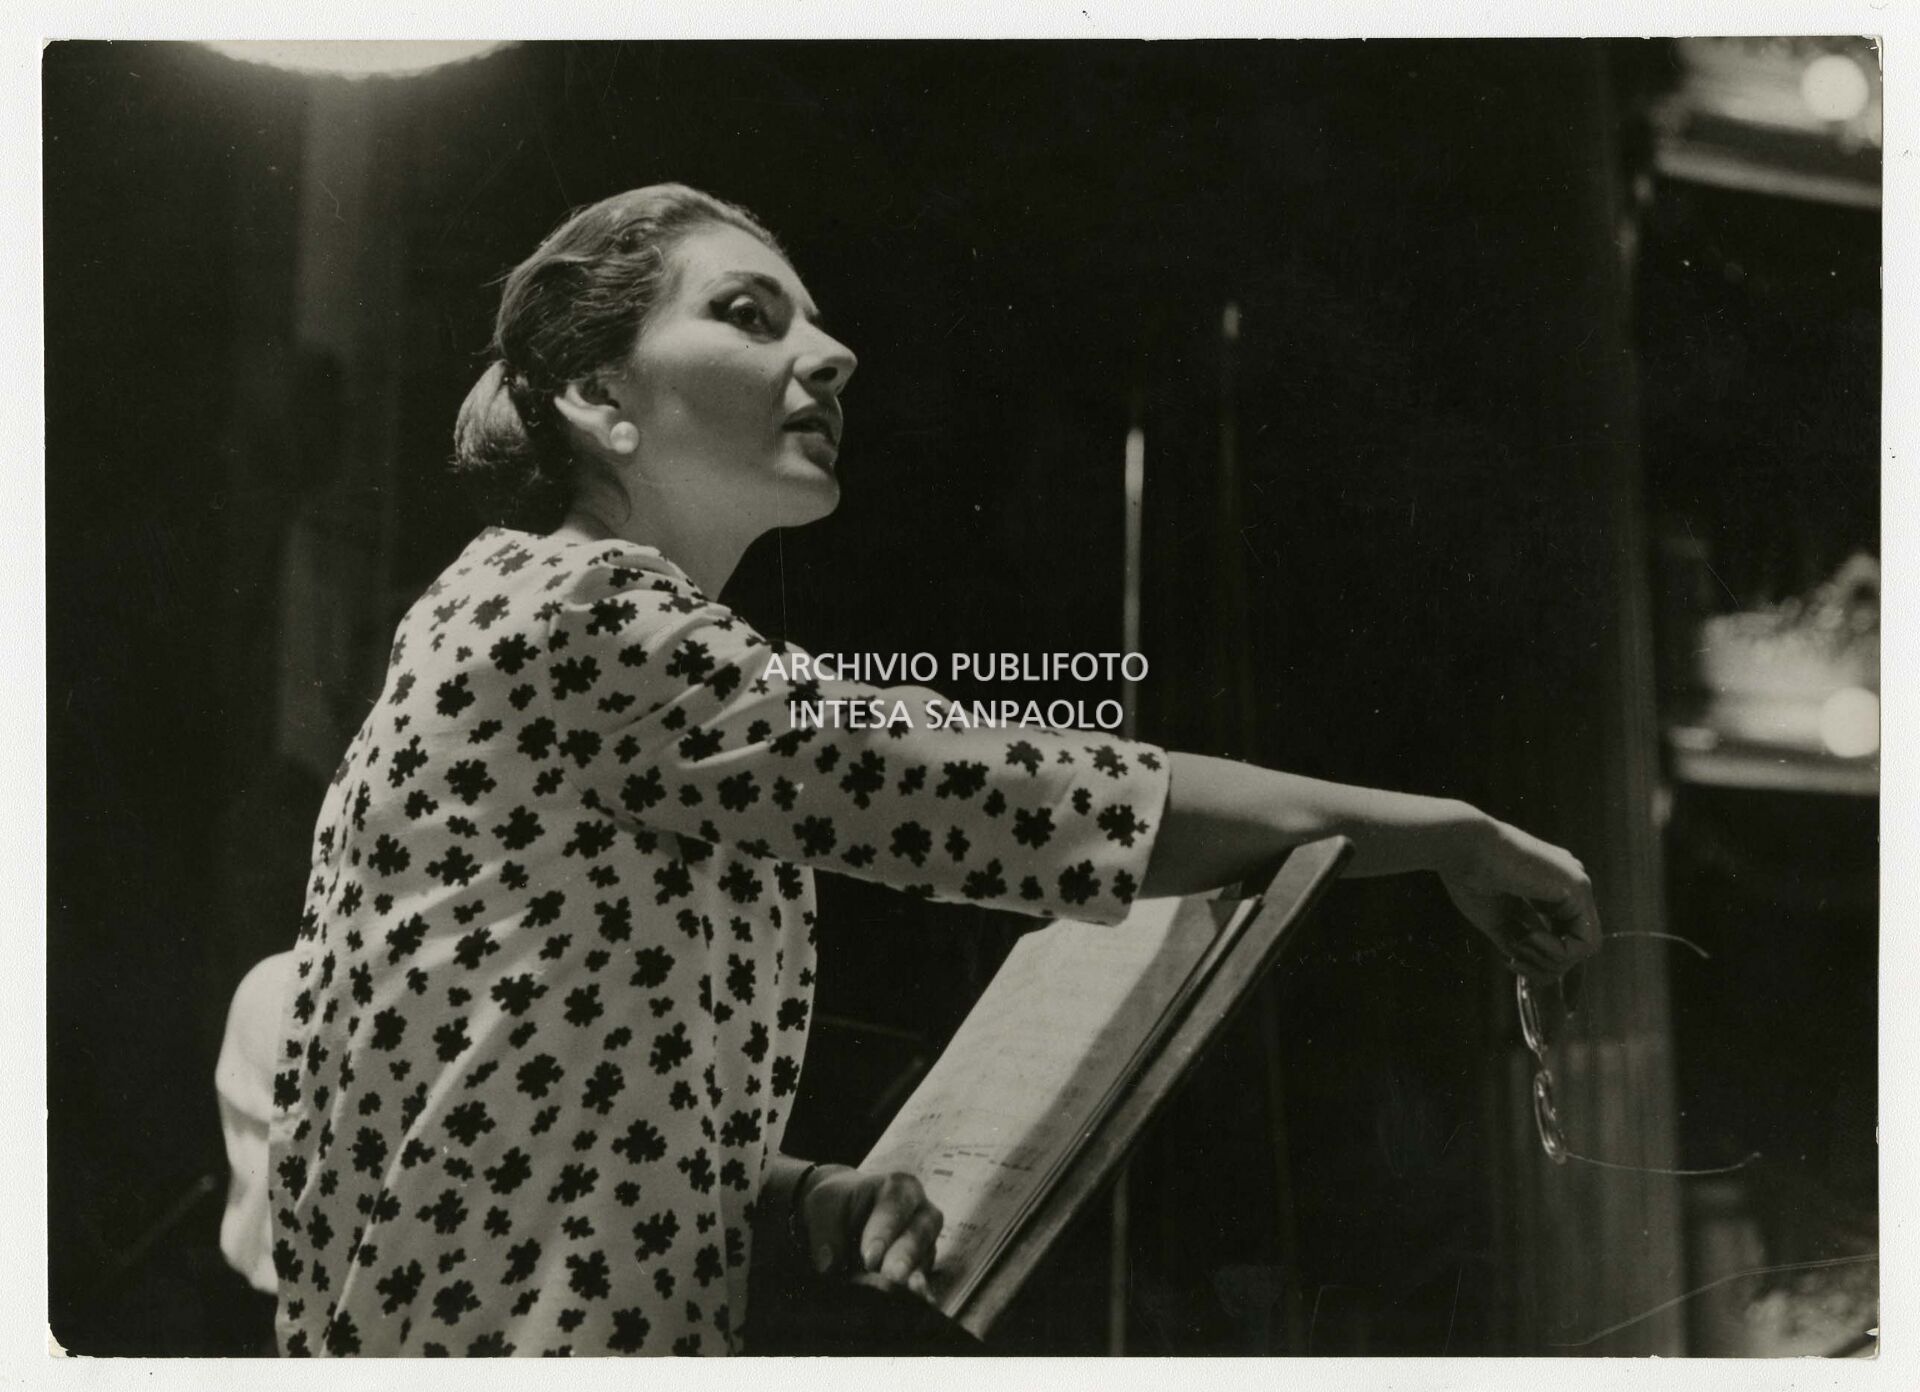 Maria Callas records the opera La Gioconda by Amilcare Ponchielli at La Scala